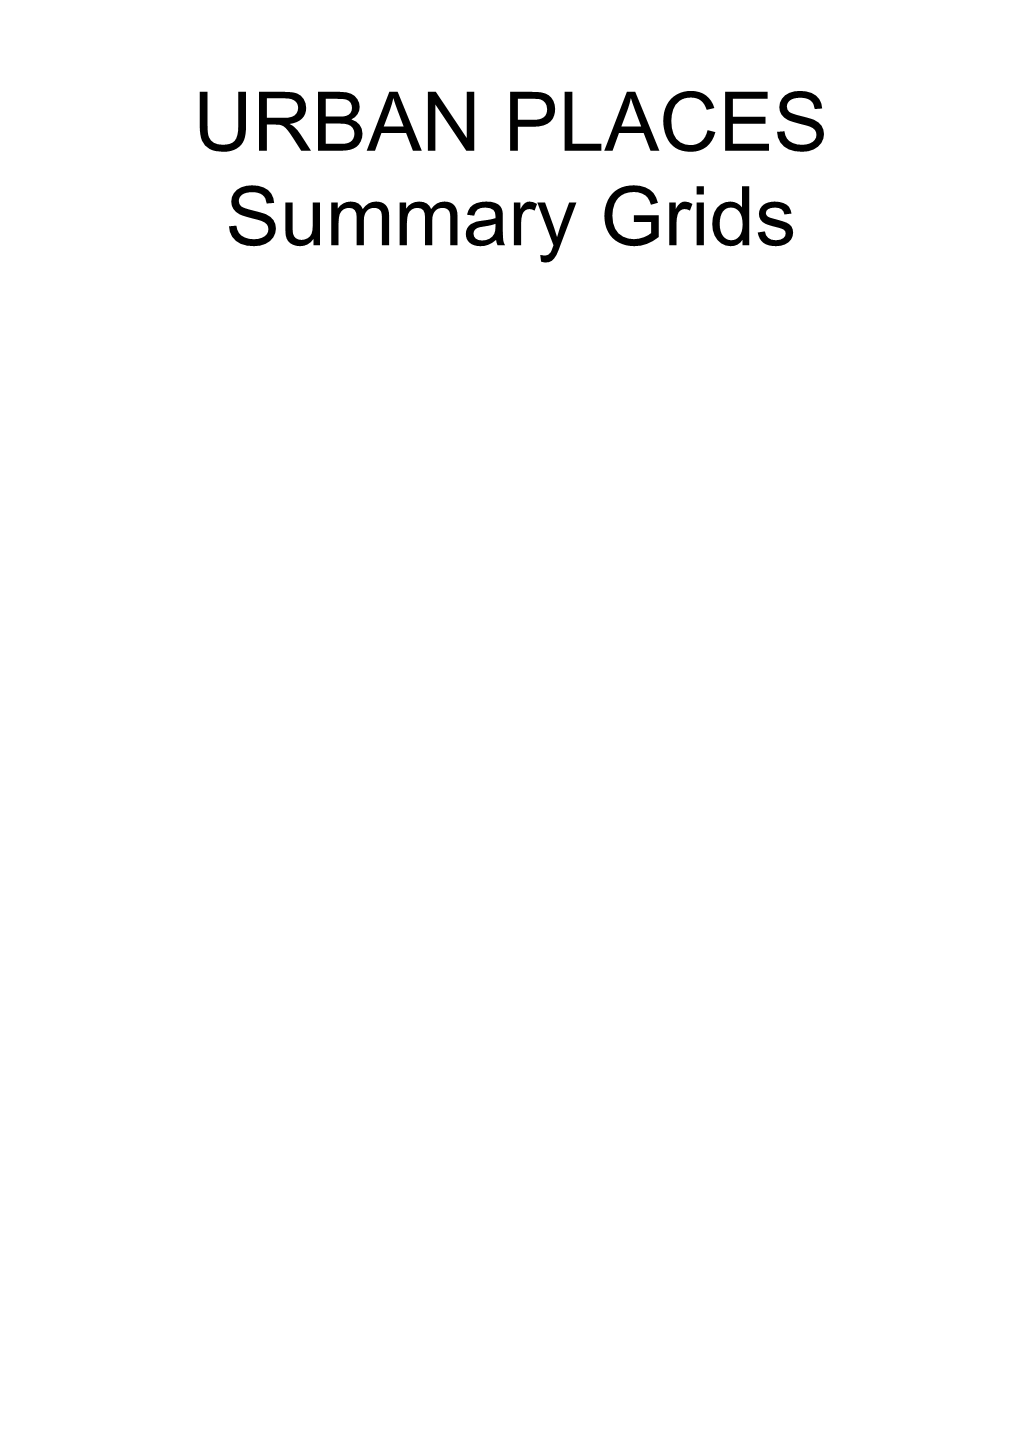 Summary Grids